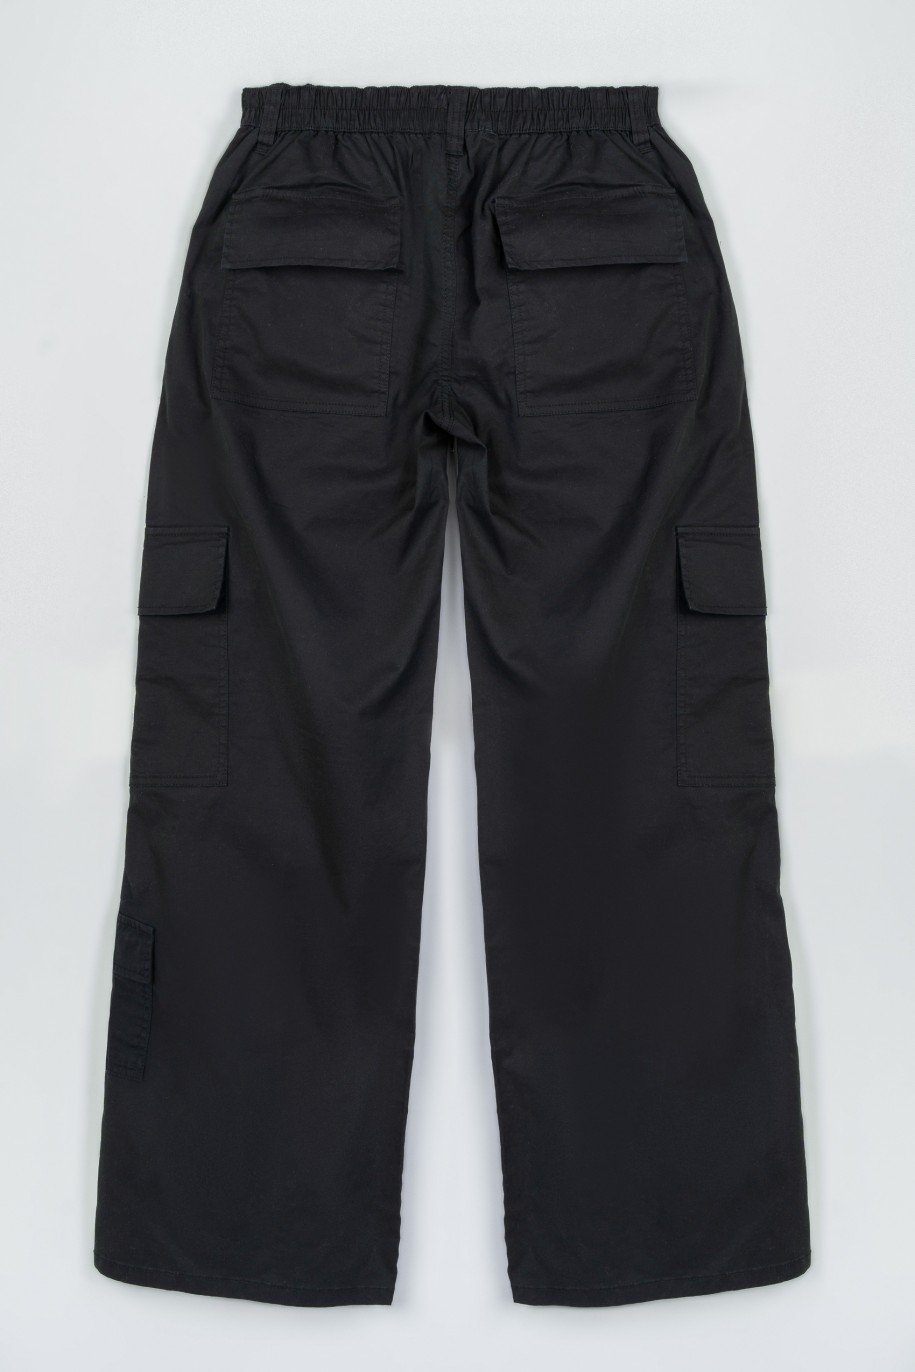 Czarne spodnie z szerokimi nogawkami z przestrzennymi kieszeniami - 47345